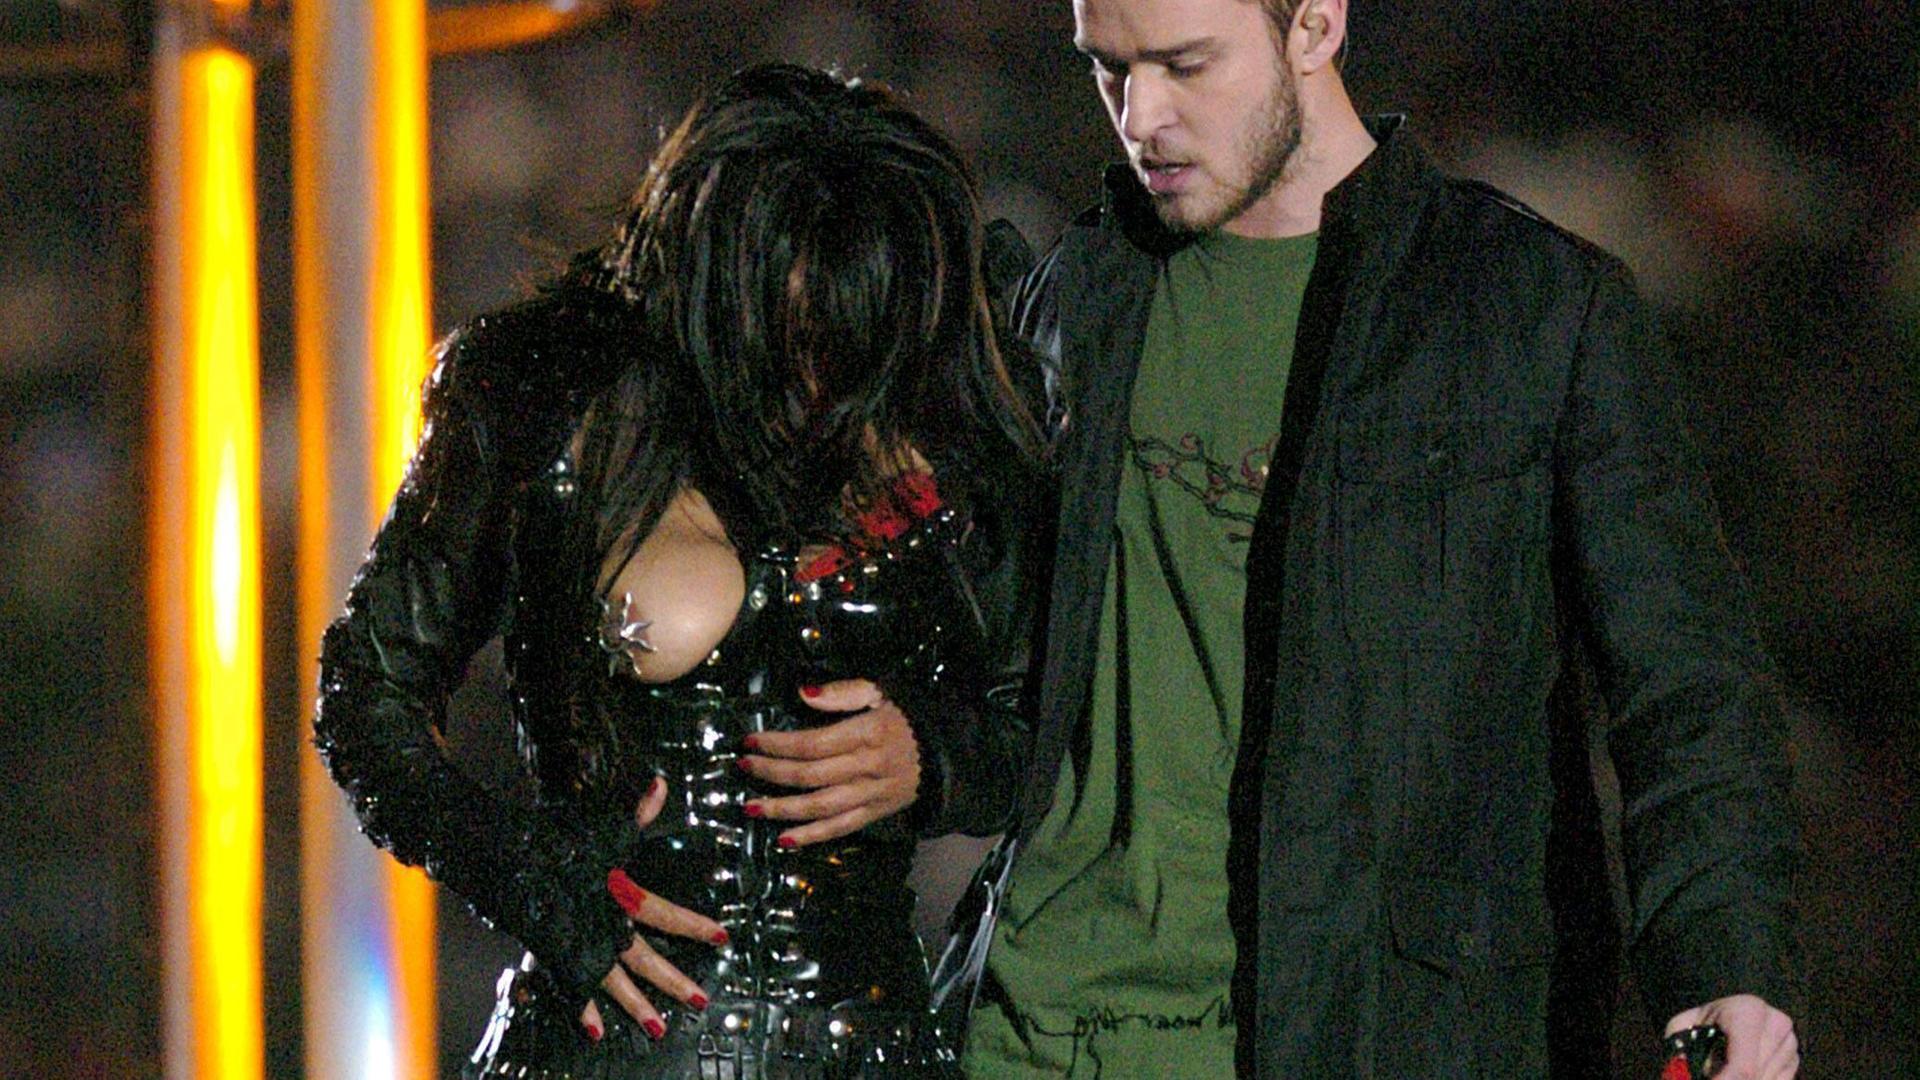 Der Auftritt von Janet Jackson und Justin Timberlake bei der Halftimeshow des Superbowls im Jahr 2004, die freigelegte Brust der Sängerin wird als skandalträchtig empfunden.